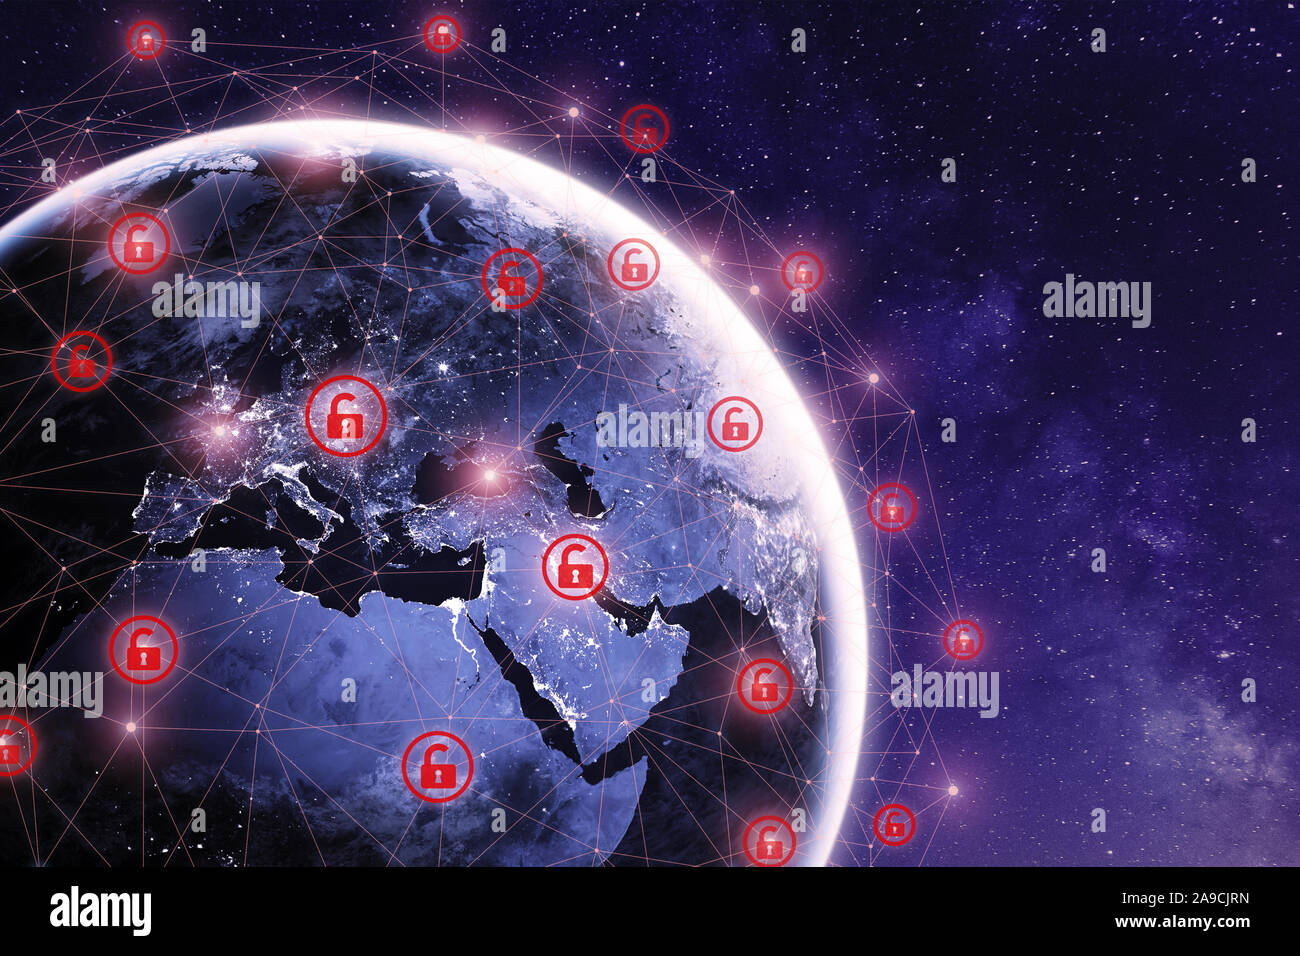 Globale Cyber Attack auf der ganzen Welt mit dem Planeten Erde gesehen vom Weltraum aus und Internet Netzwerk Kommunikation unter Abwehr von Cyberattacken mit roten Icons, worldwid Stockfoto